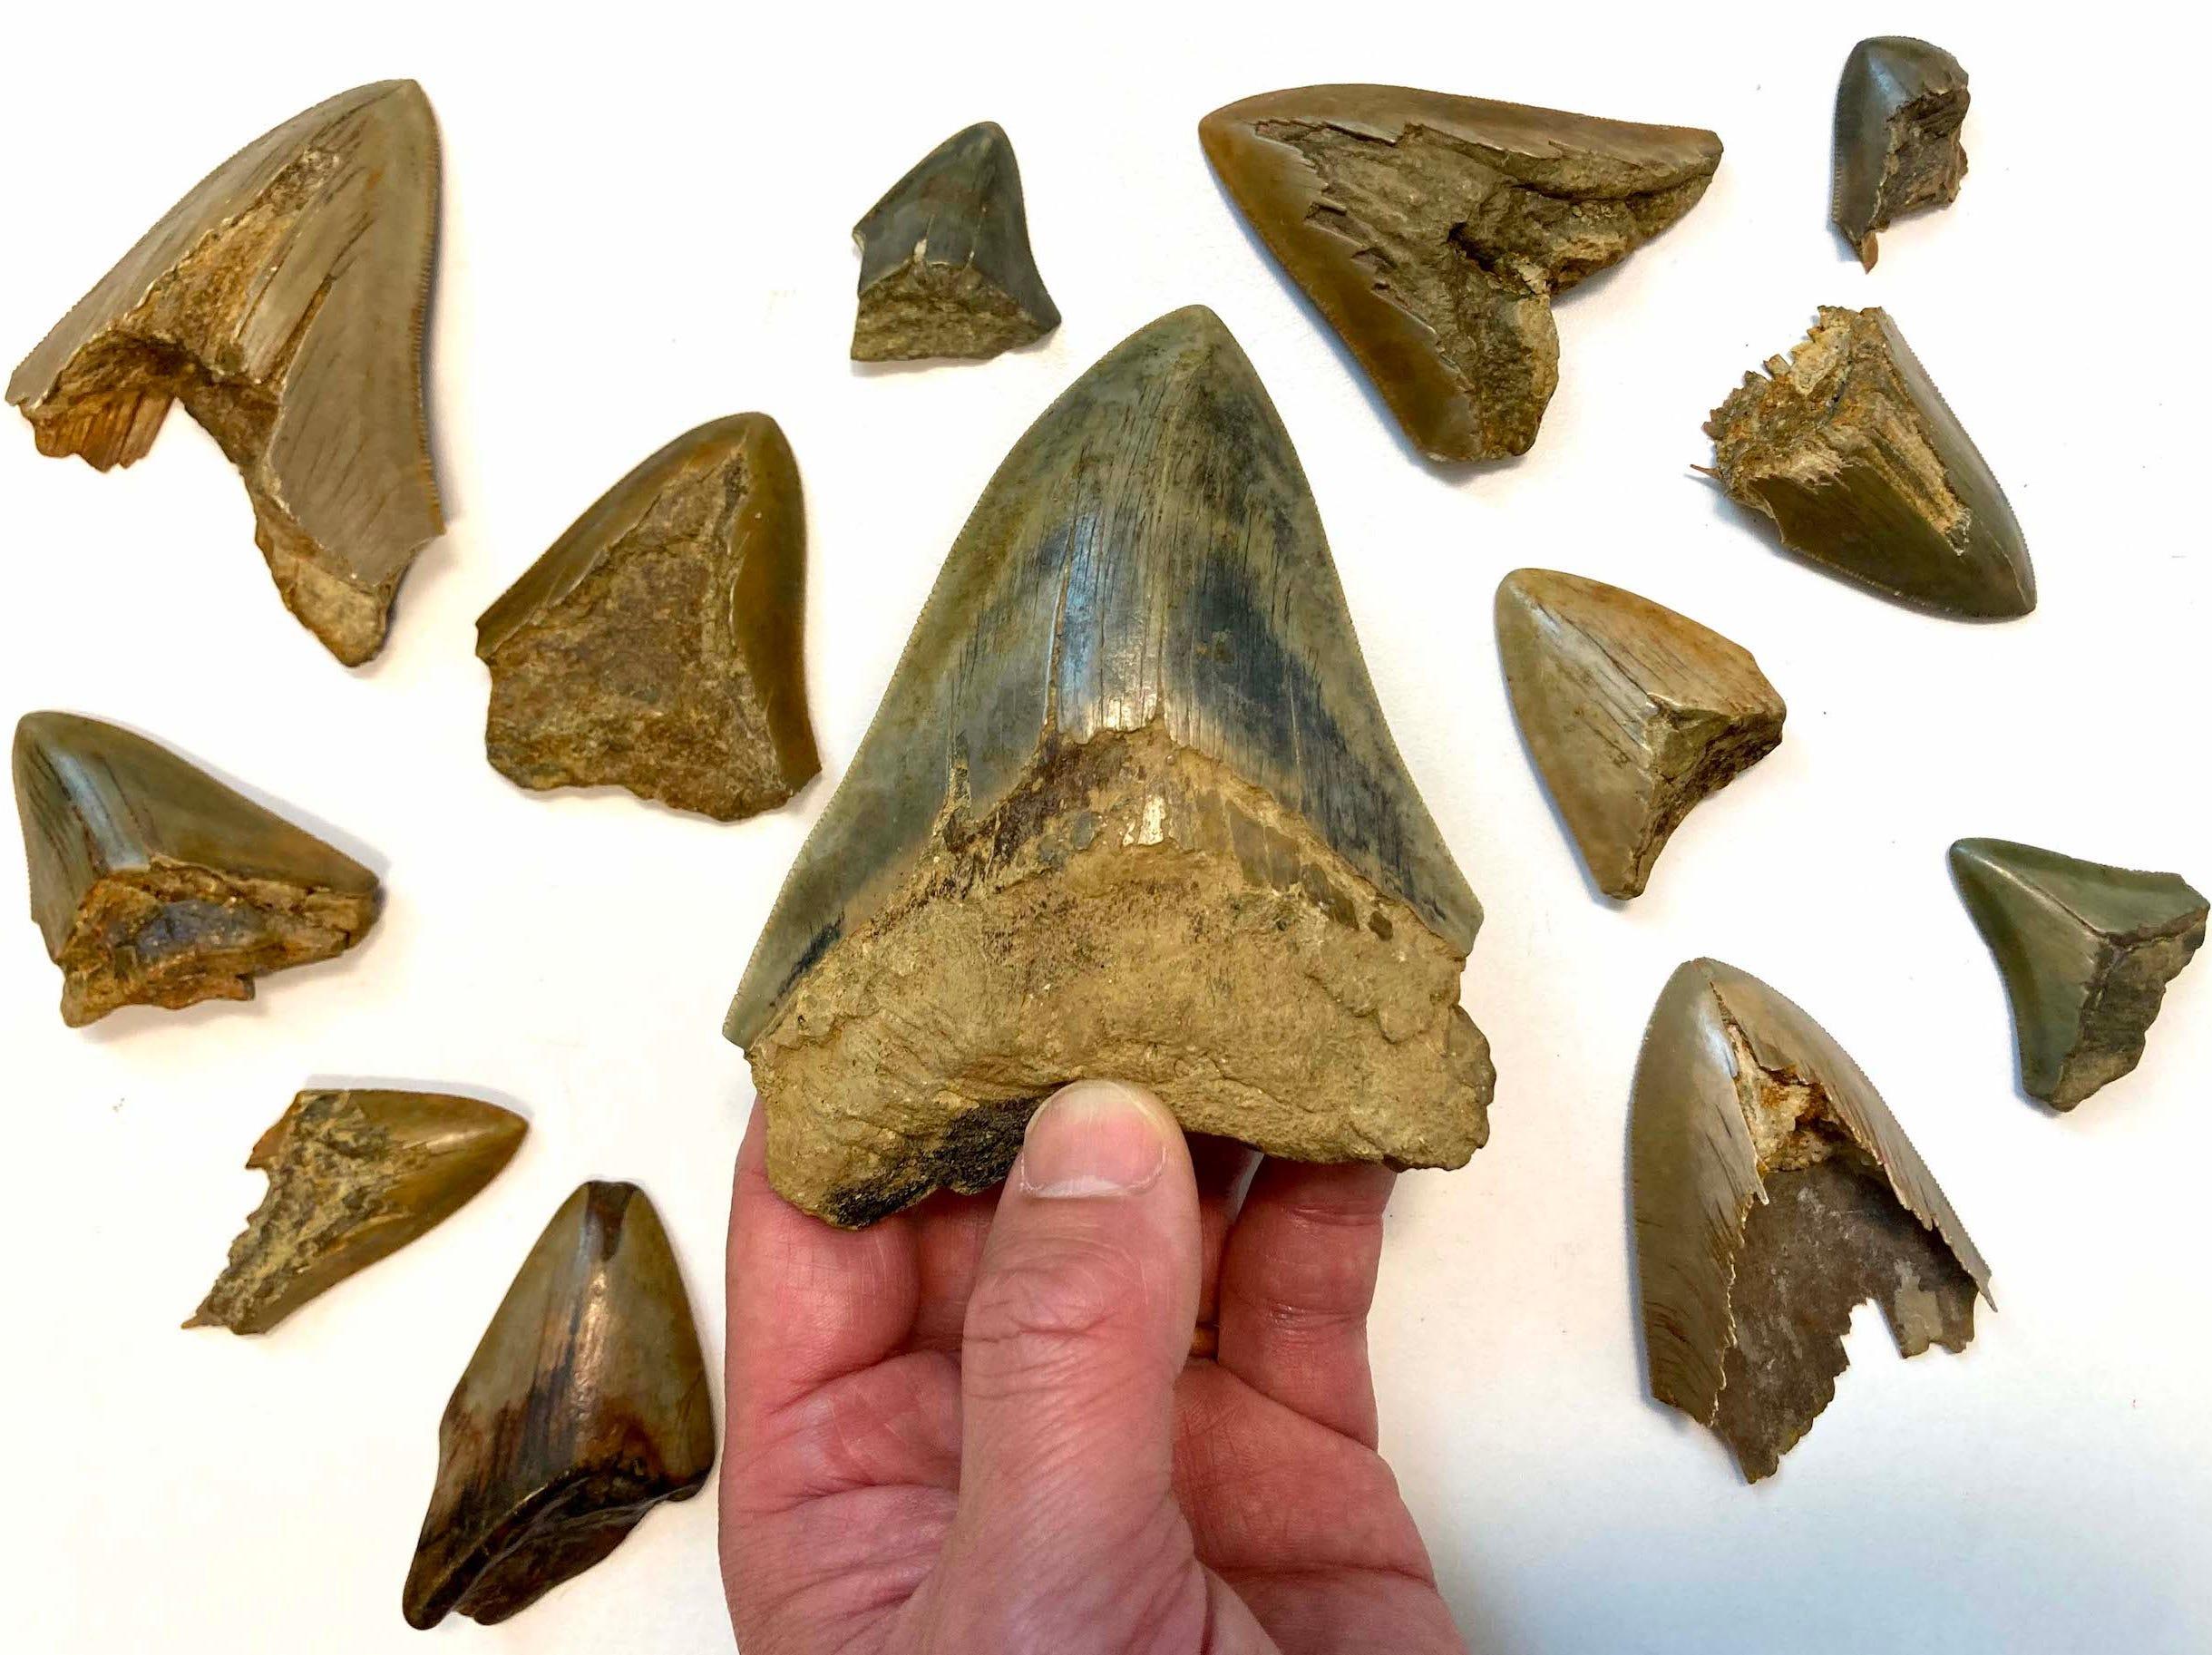 メガロドンは古代の海でホホジロザメと獲物を取り合っていた…歯の化石